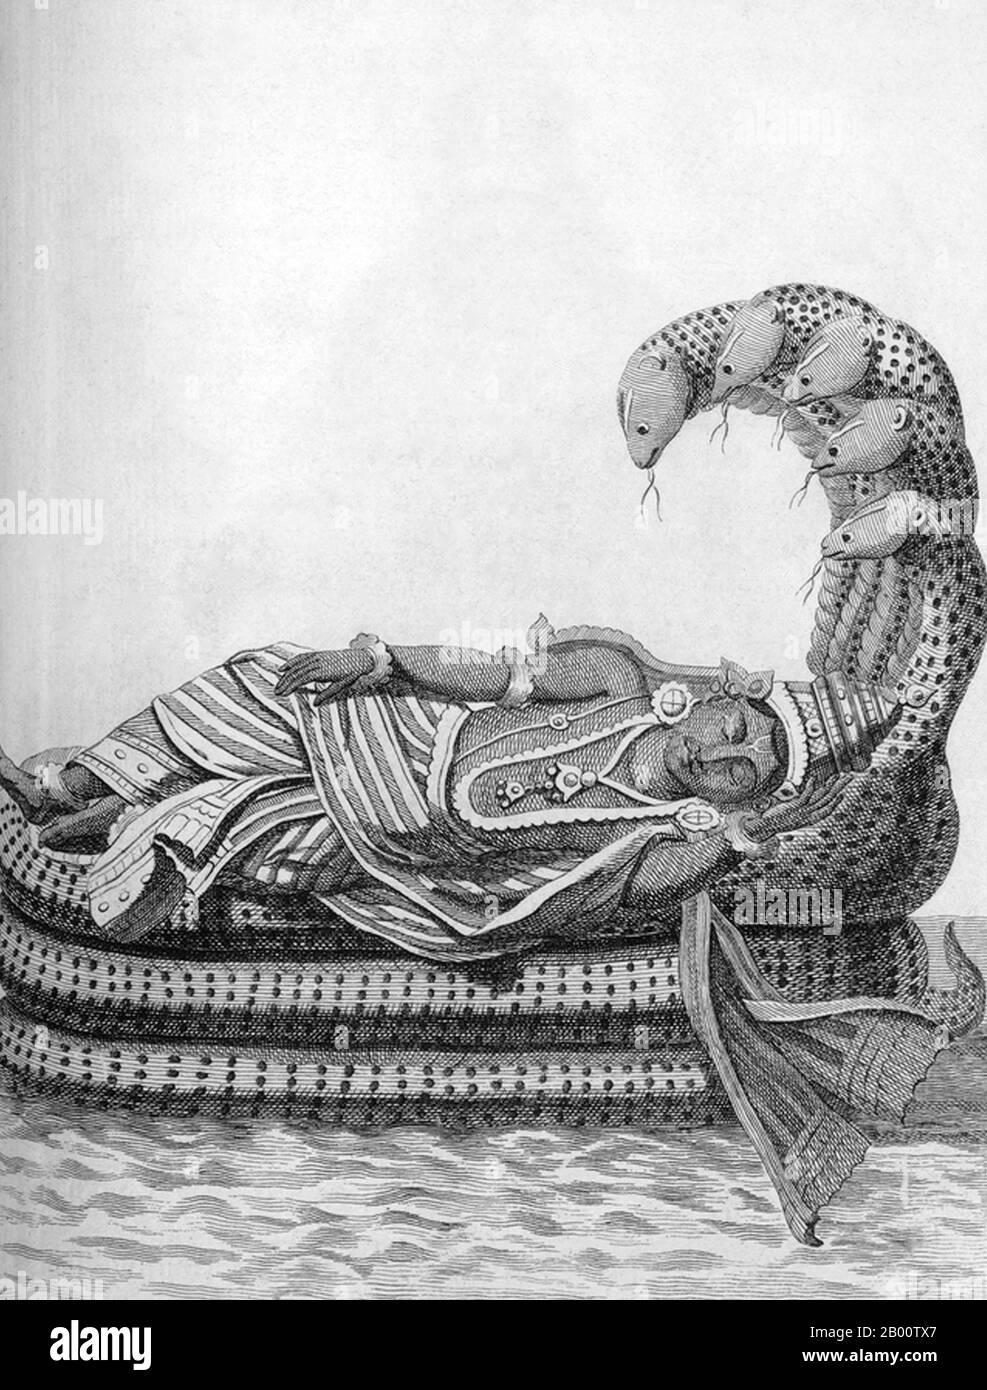 Indien: 'Vishnu schläft auf Adhi Shesha, seinem Schlangenbett, im unendlichen Meer der Milch'. Illustration von Pierre Sonnerat (1748-1814), 1782. Pierre Sonnerat (1748-1814) war ein französischer Naturforscher und Forscher, der zwischen 1769 und 1781 mehrere Reisen nach Südostasien machte. Er veröffentlichte diese zweibändige Bericht über seine Reise von 1774-81 in 1782. Band 1 befasst sich ausschließlich mit Indien, dessen Kultur Sonnerat sehr bewundert, und ist besonders bemerkenswert für seine erweiterte Diskussion über Religion in Indien, Hinduismus im Besonderen. Das Buch ist mit Stichen illustriert, die auf Sonnerat’s Zeichnungen basieren. Stockfoto